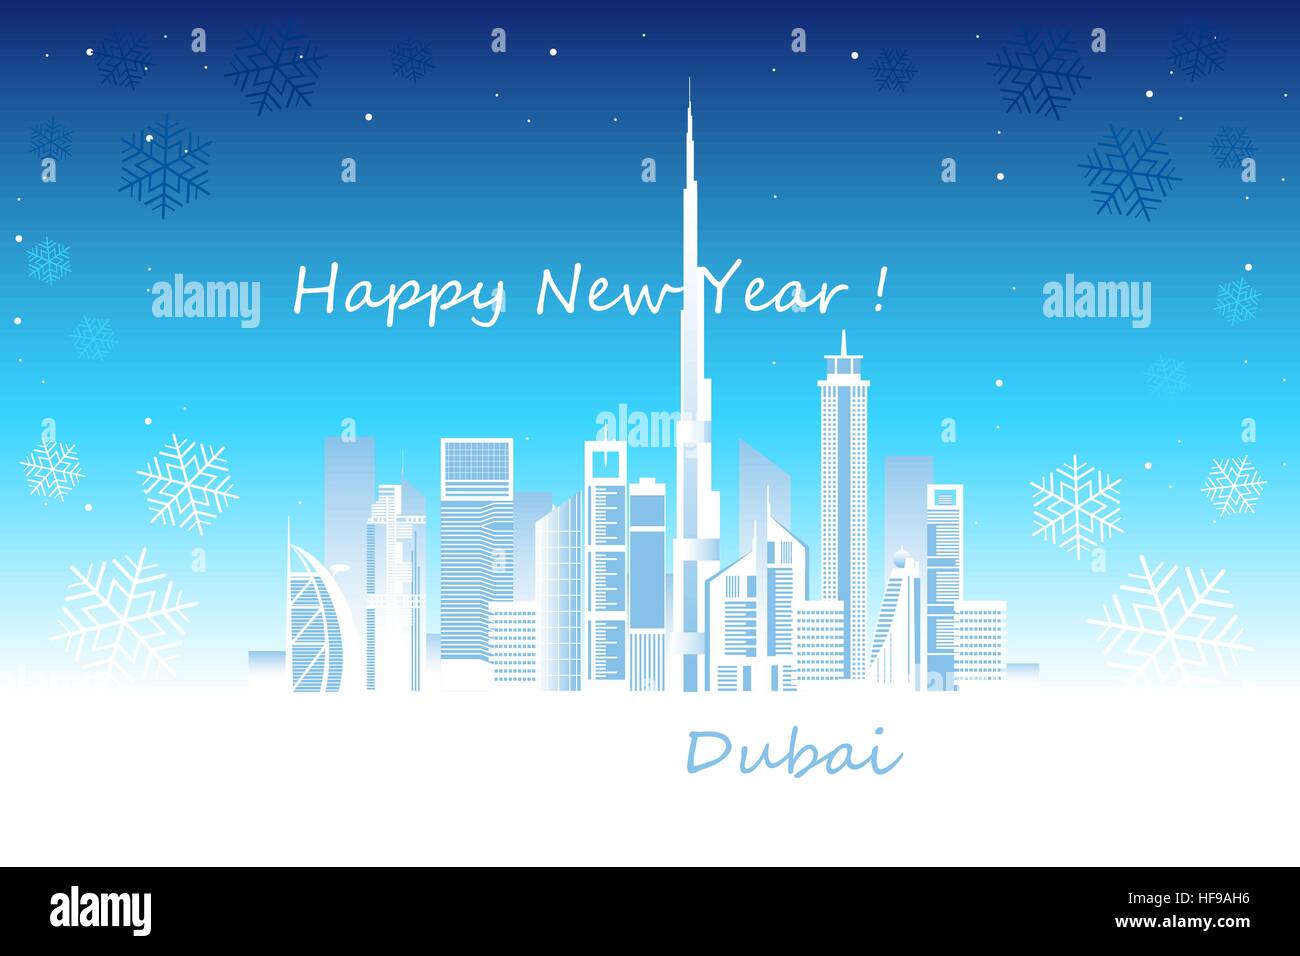 Dubaï cityscape with skyscrapers et points de repère, des flocons de neige et Bonne Année félicitations vector illustration Illustration de Vecteur